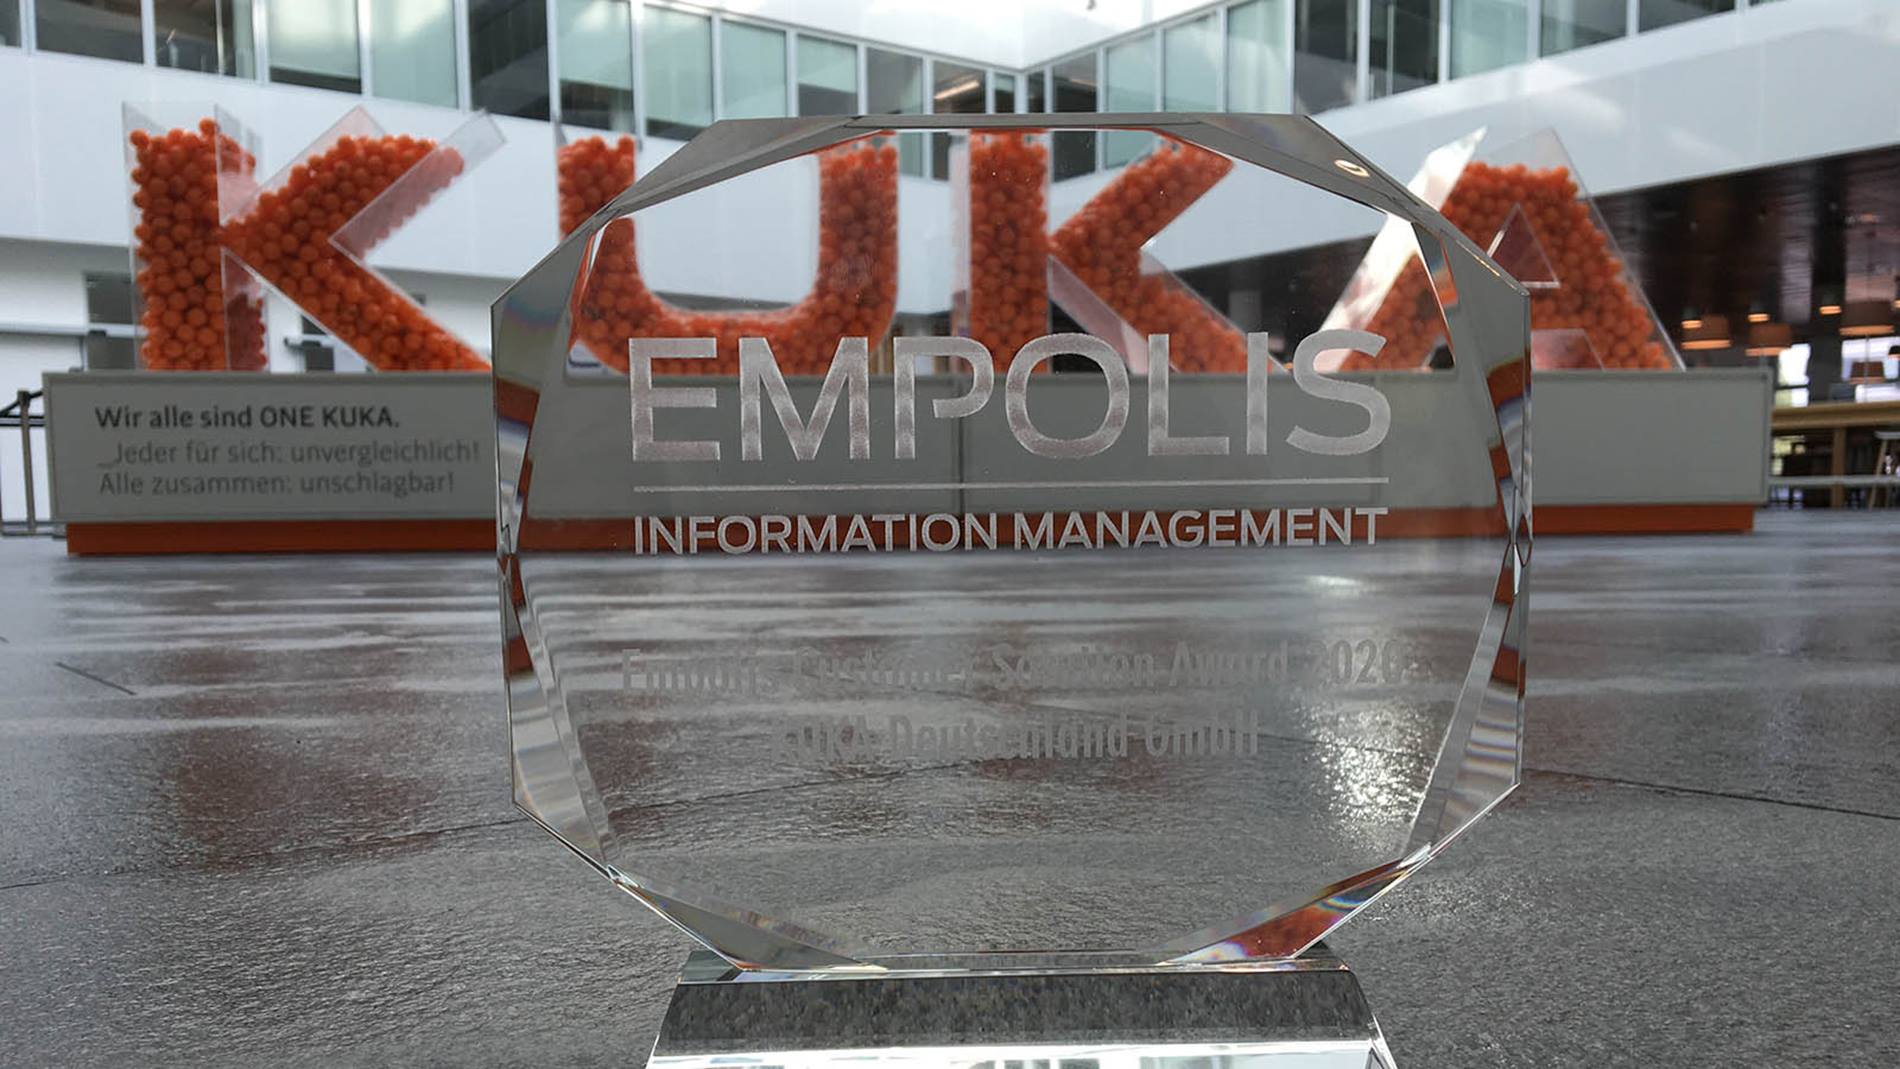 Der Empolis Customer Solution Award 2020 geht an KUKA